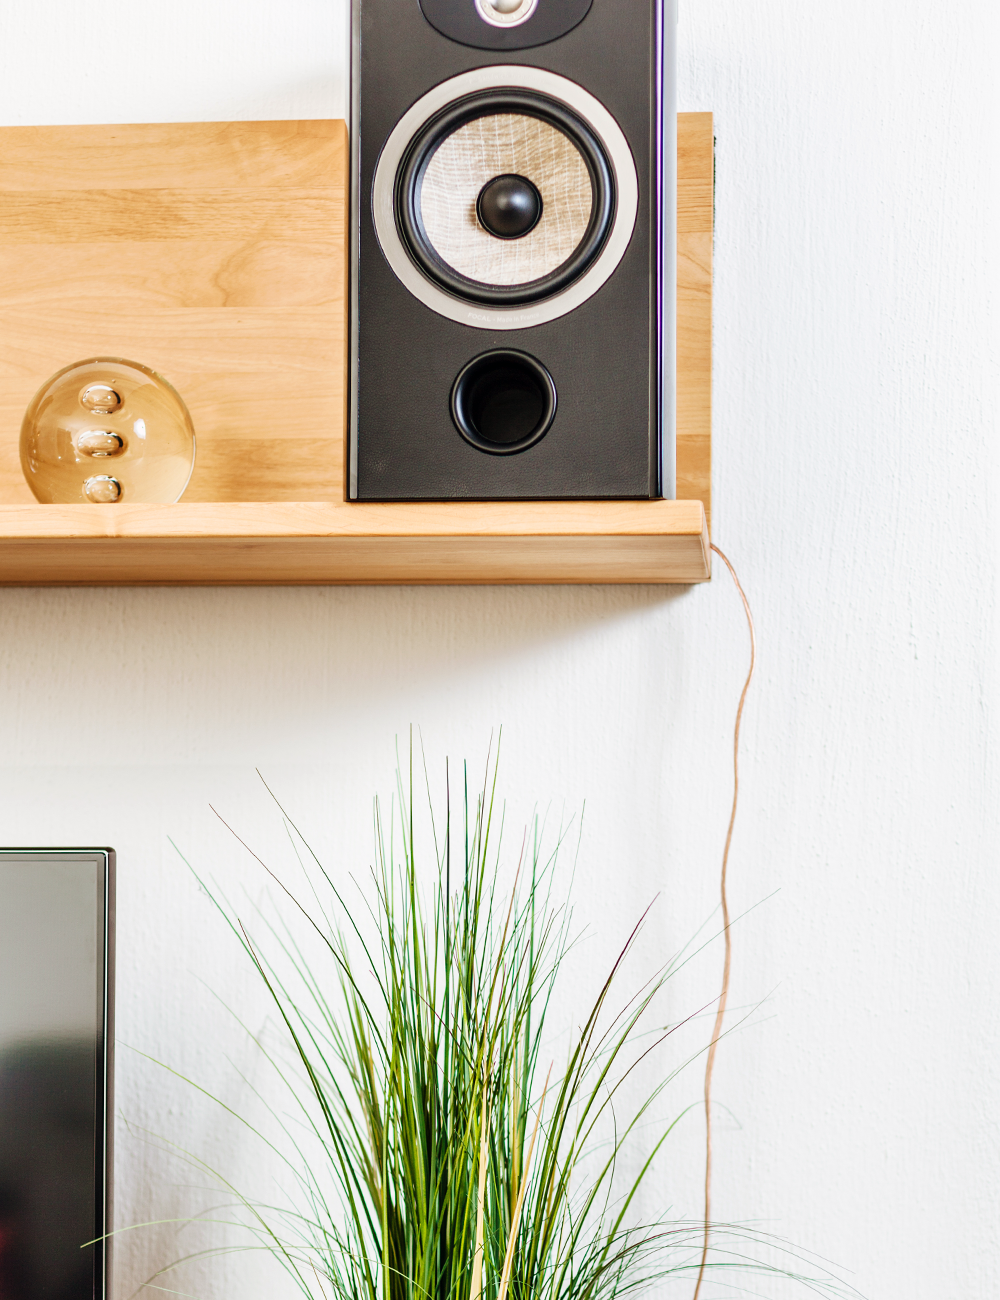 Lautsprecherkabel sind ein optisches Ärgernis in vielen Wohnzimmern #wohnzimmer ©cip